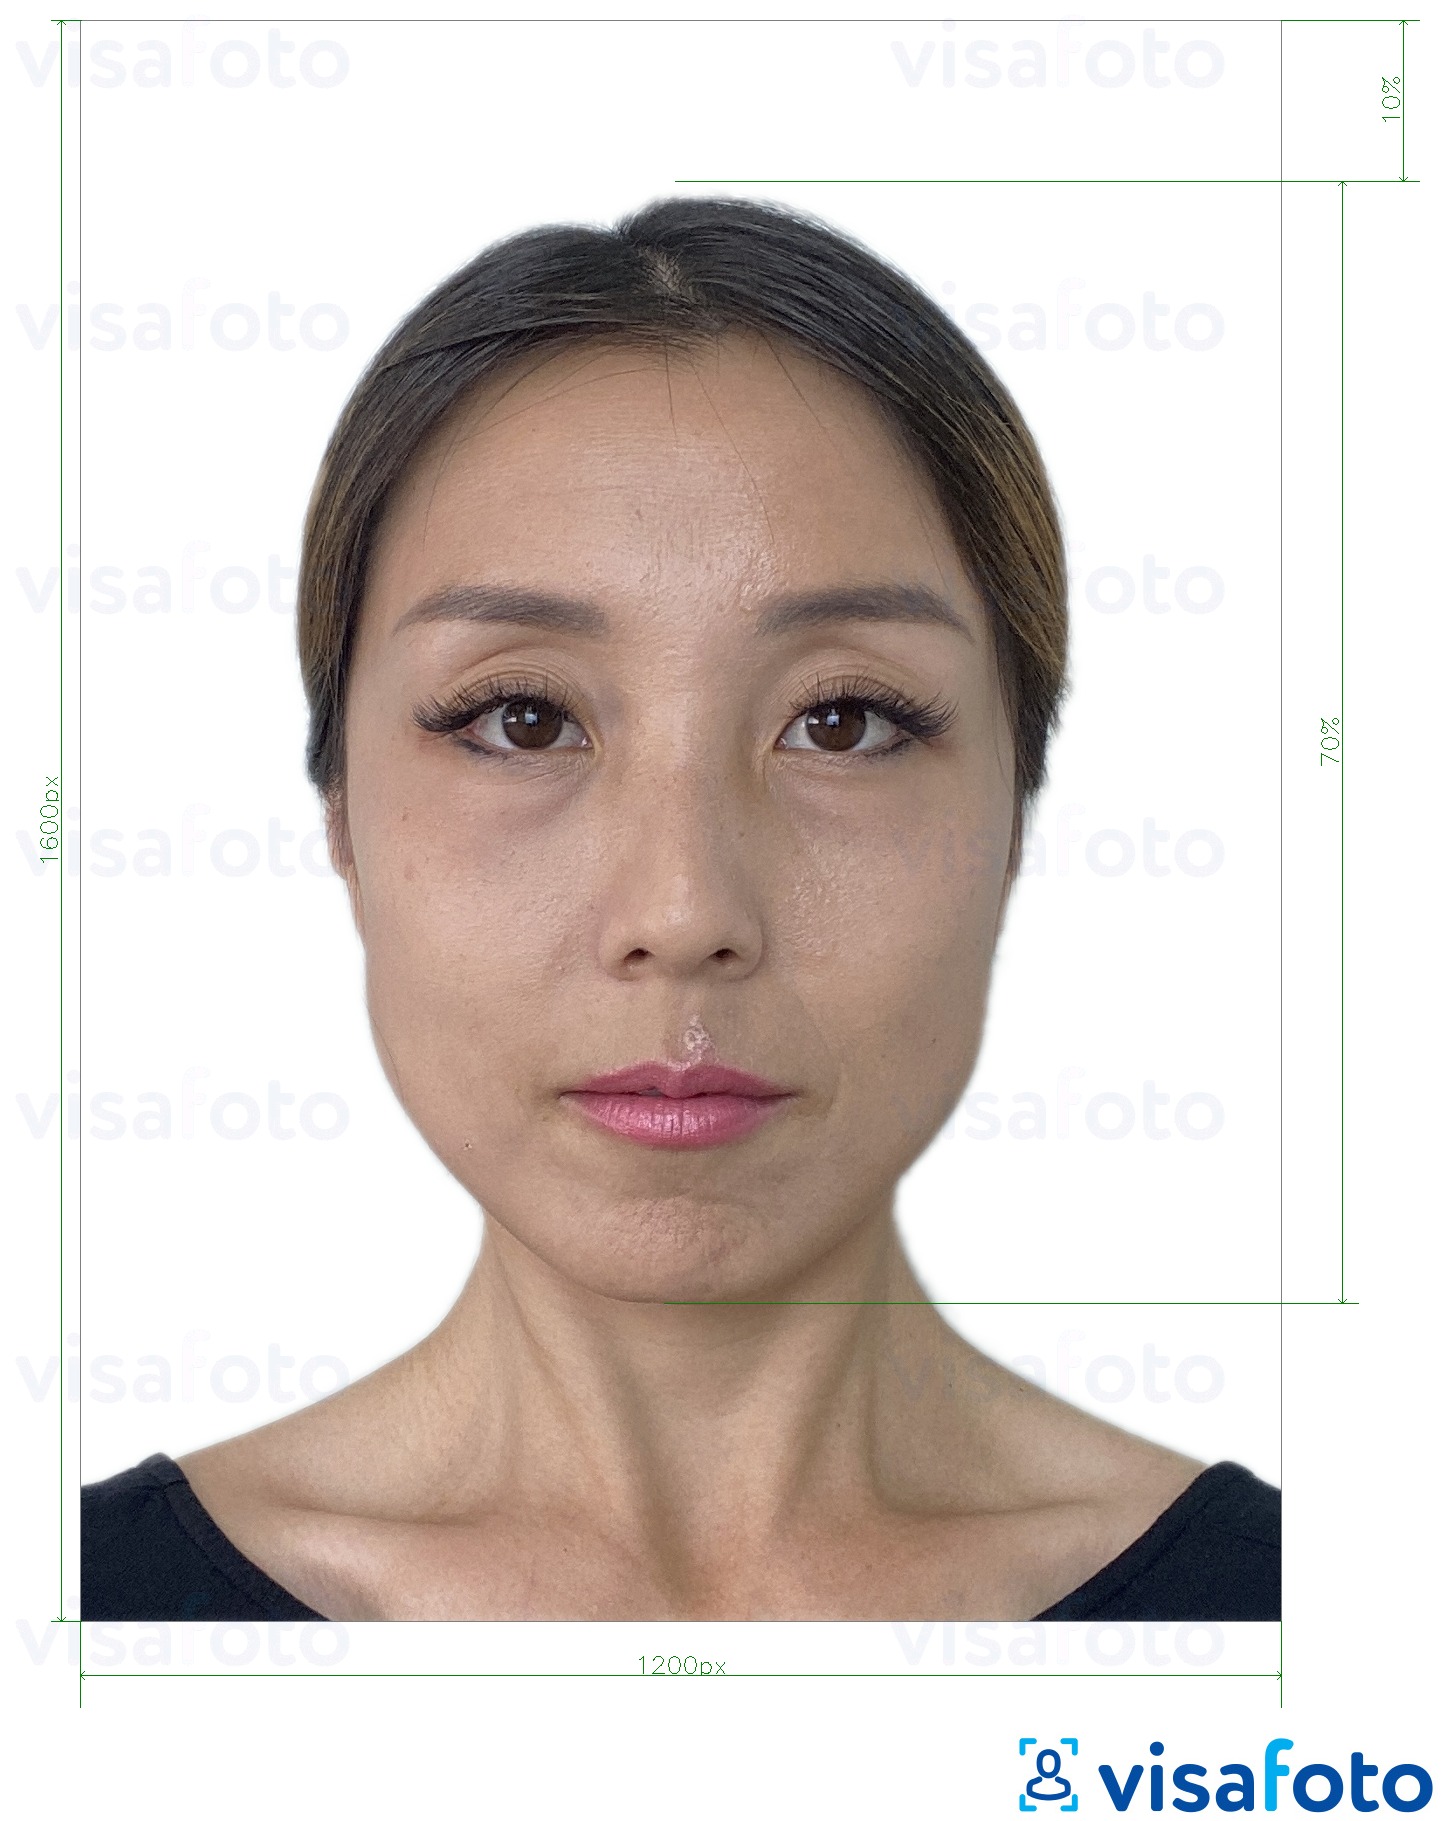 香港在线电子签证1200x1600像素 的标准尺寸照片示例